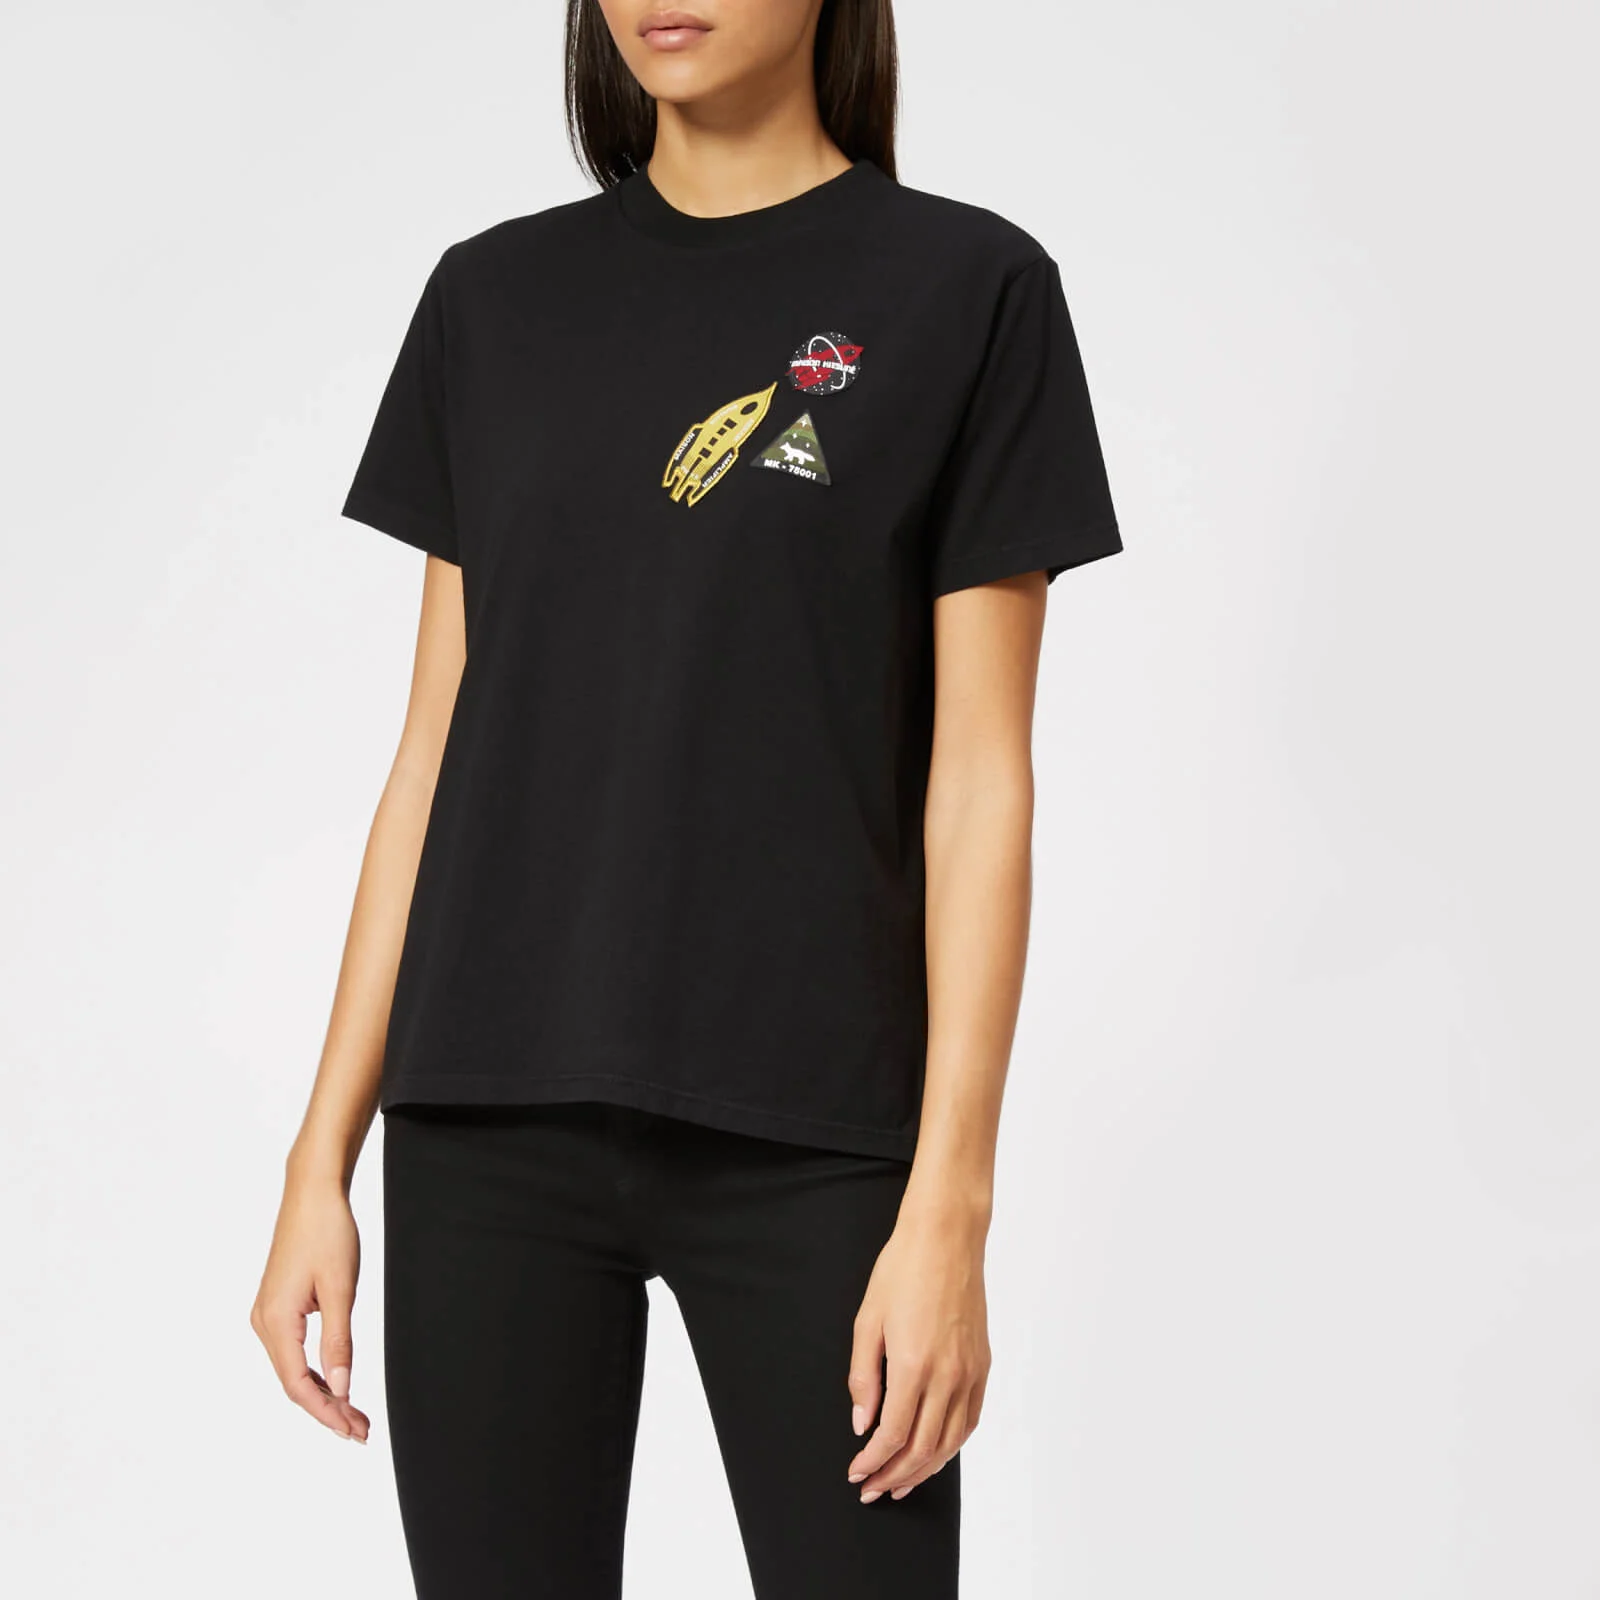 Maison Kitsuné Women's Astronaut Patch T-Shirt - Black Image 1